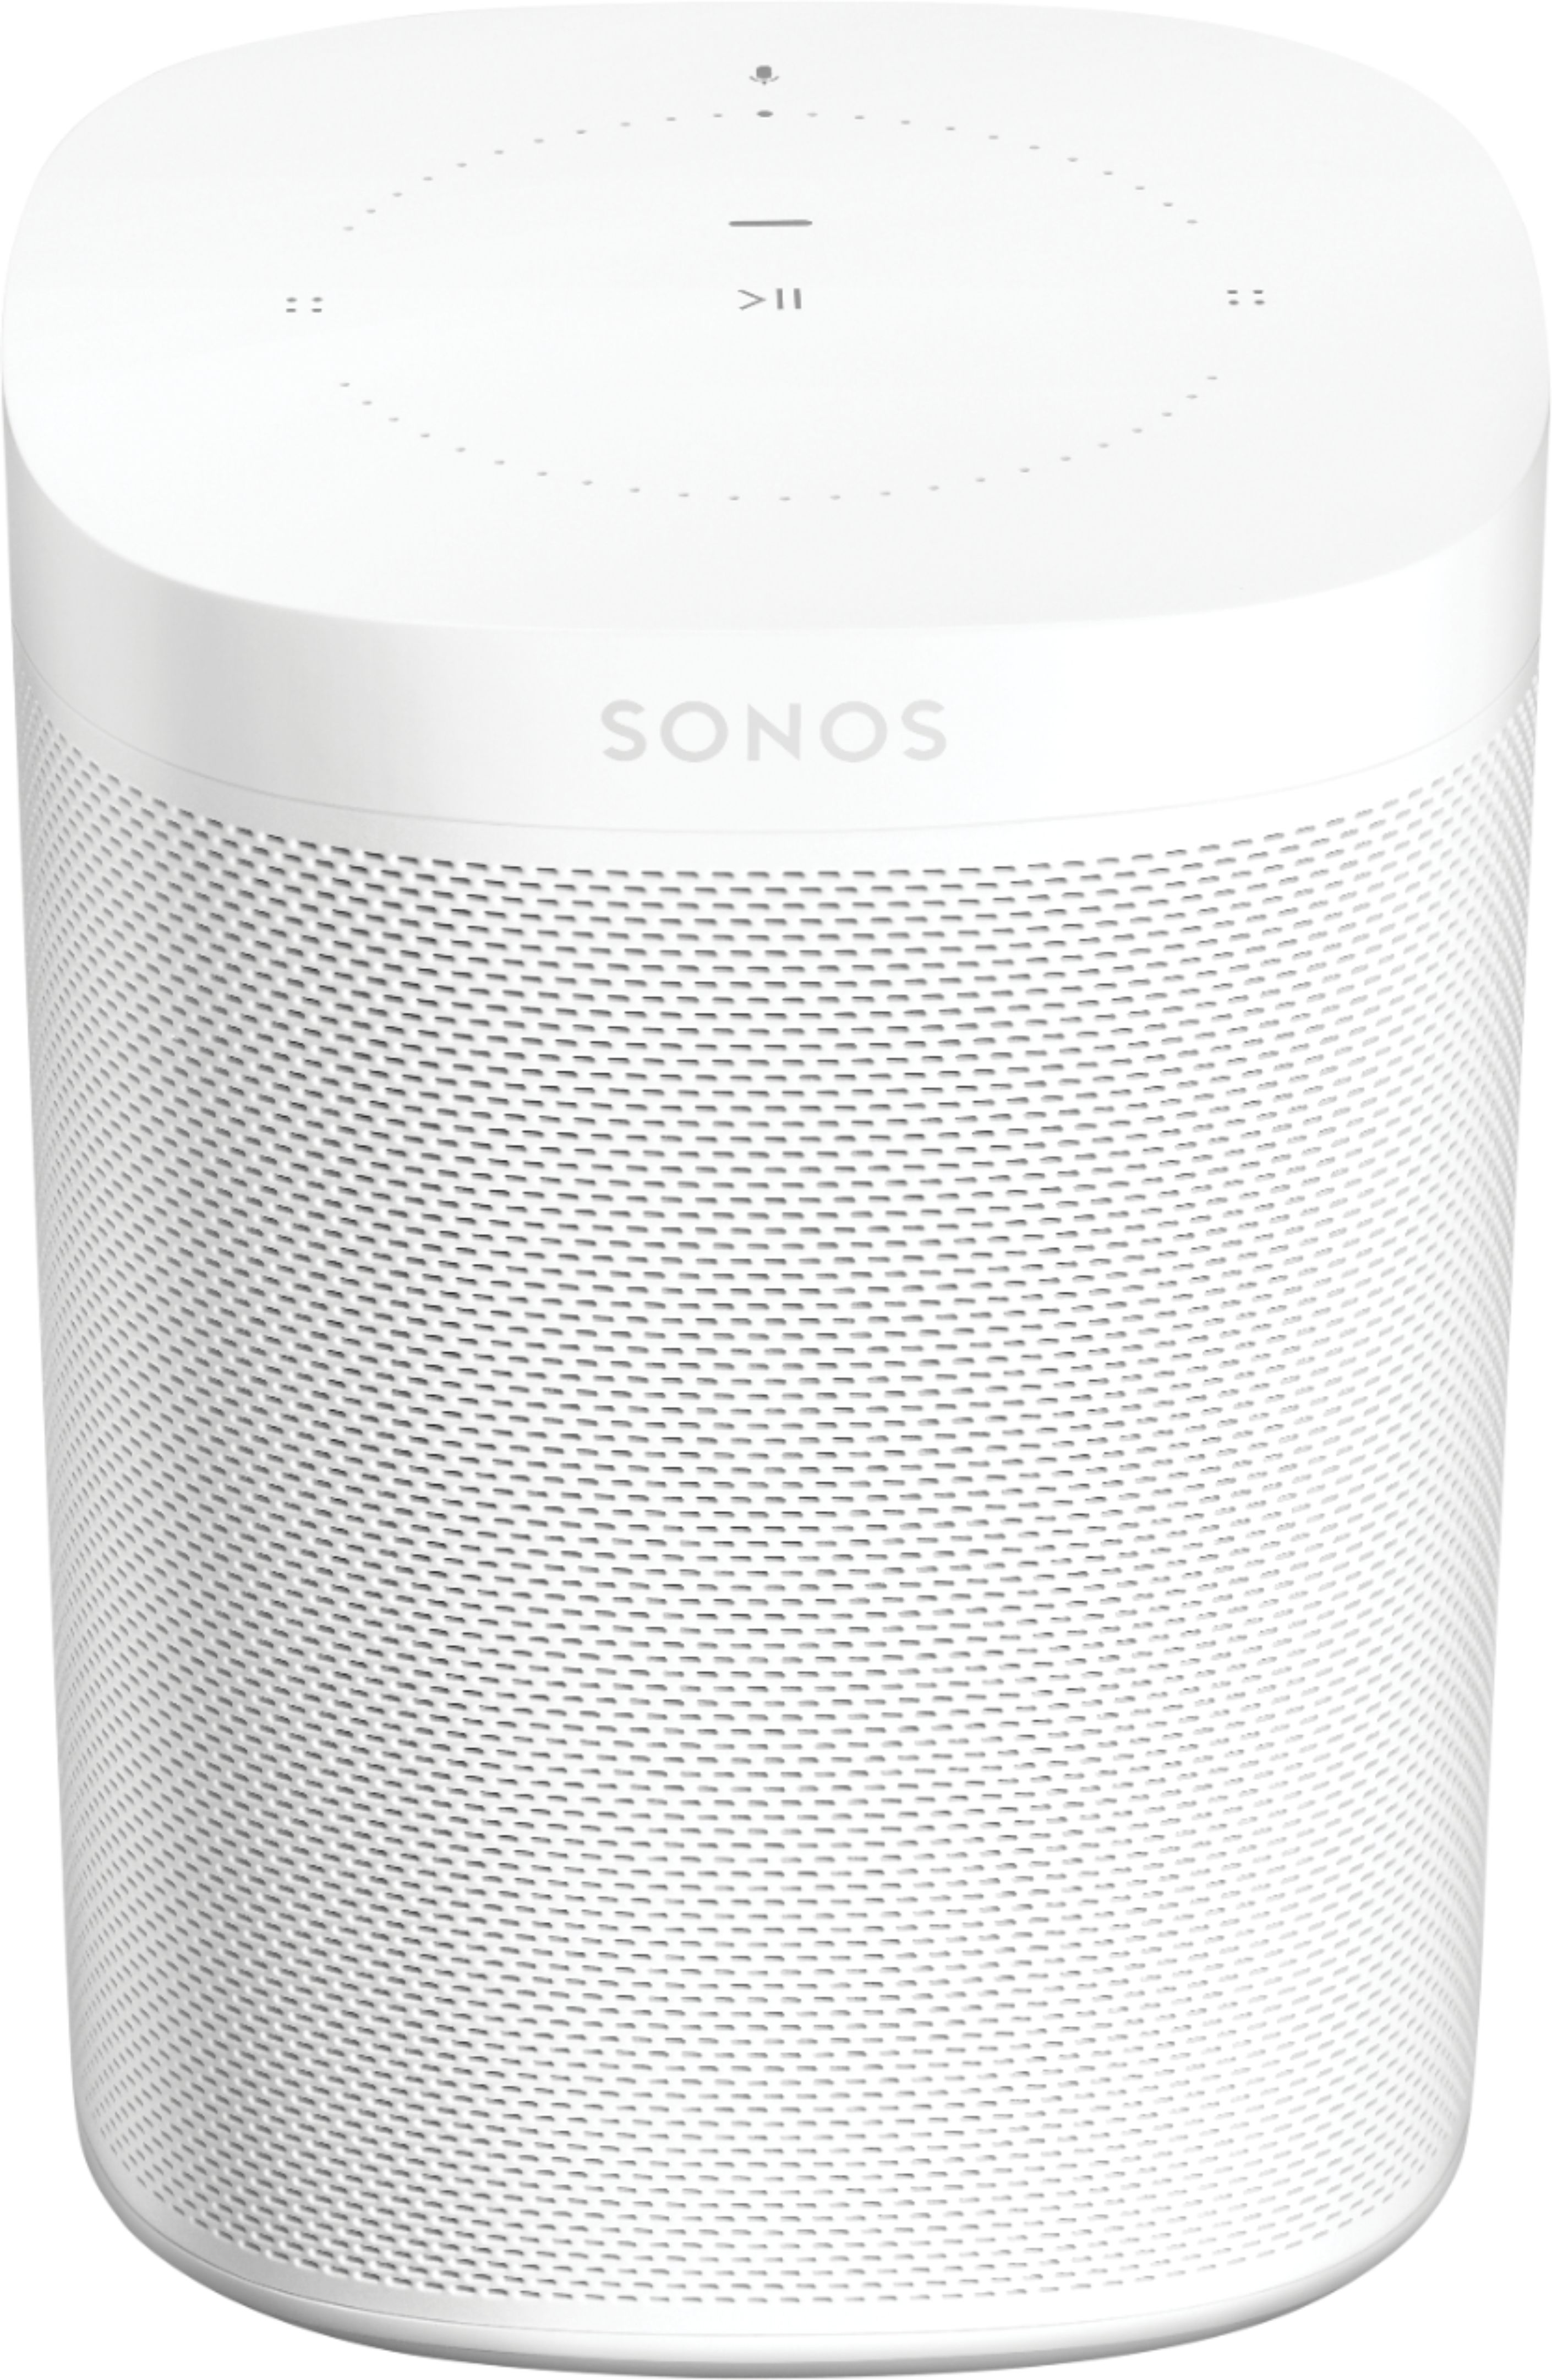 オーディオ機器 スピーカー Sonos One (Gen 2) Smart Speaker with Voice Control built-in White 